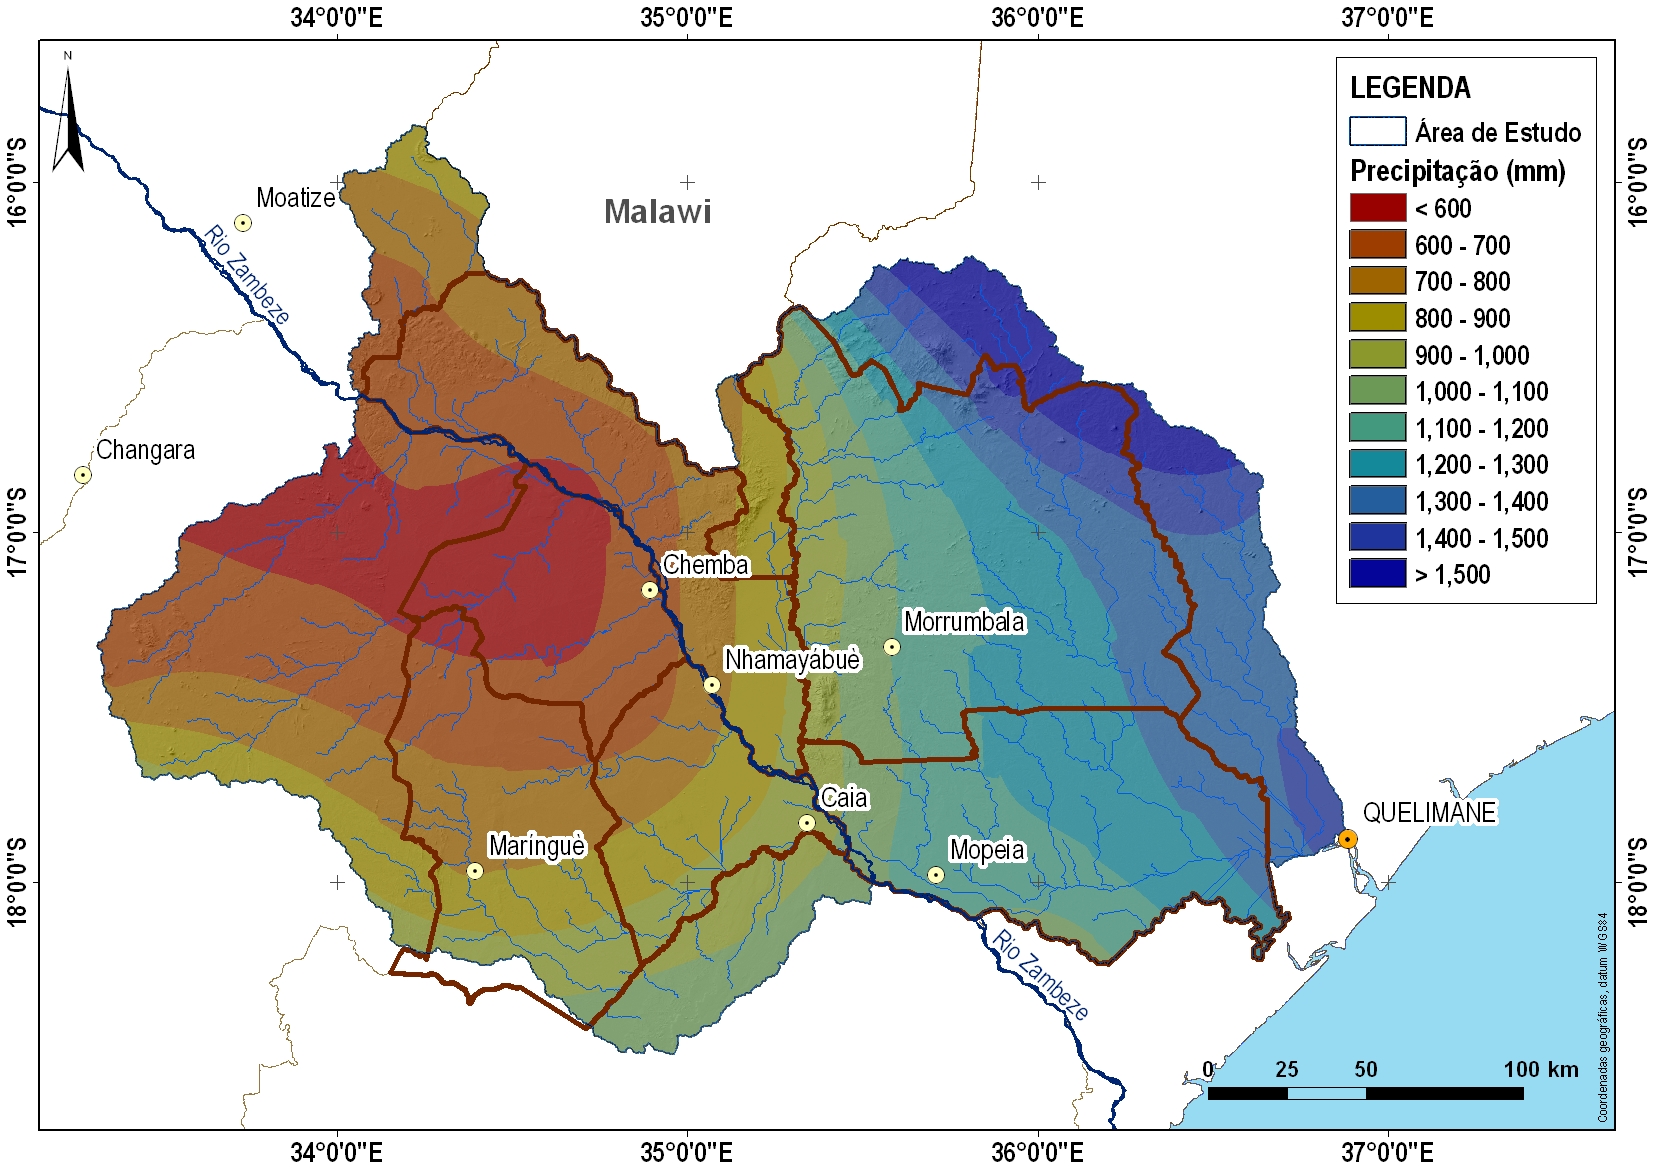 Distribuição espacial da precipitação média anual na área de estudo